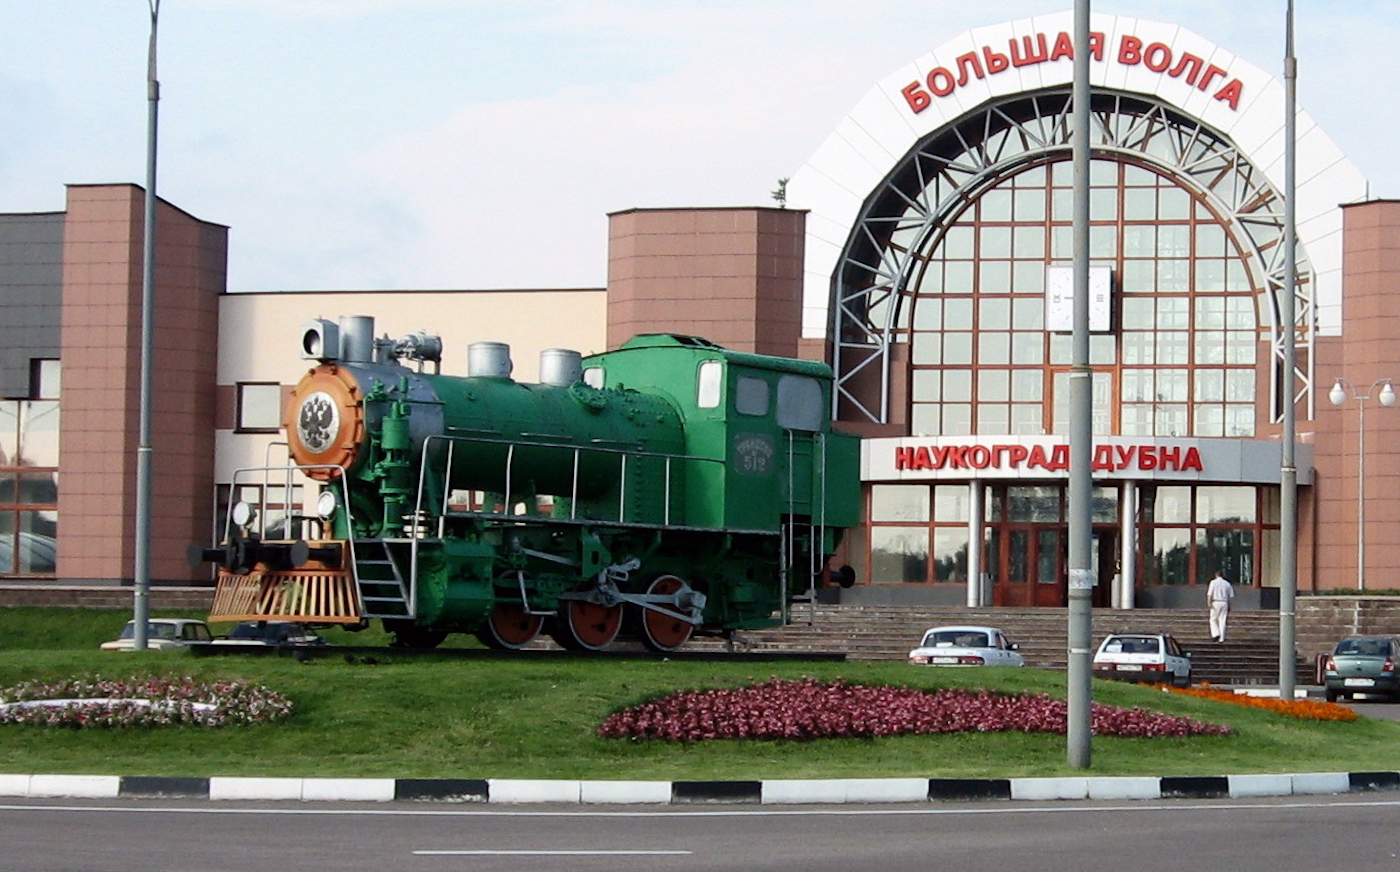 Le dubnium a été baptisé en l’honneur de la ville russe dans laquelle il est supposé avoir été découvert. Ici, une photo de la gare de Dubna. © Wonder37, Wikipédia, CC by-sa 3.0